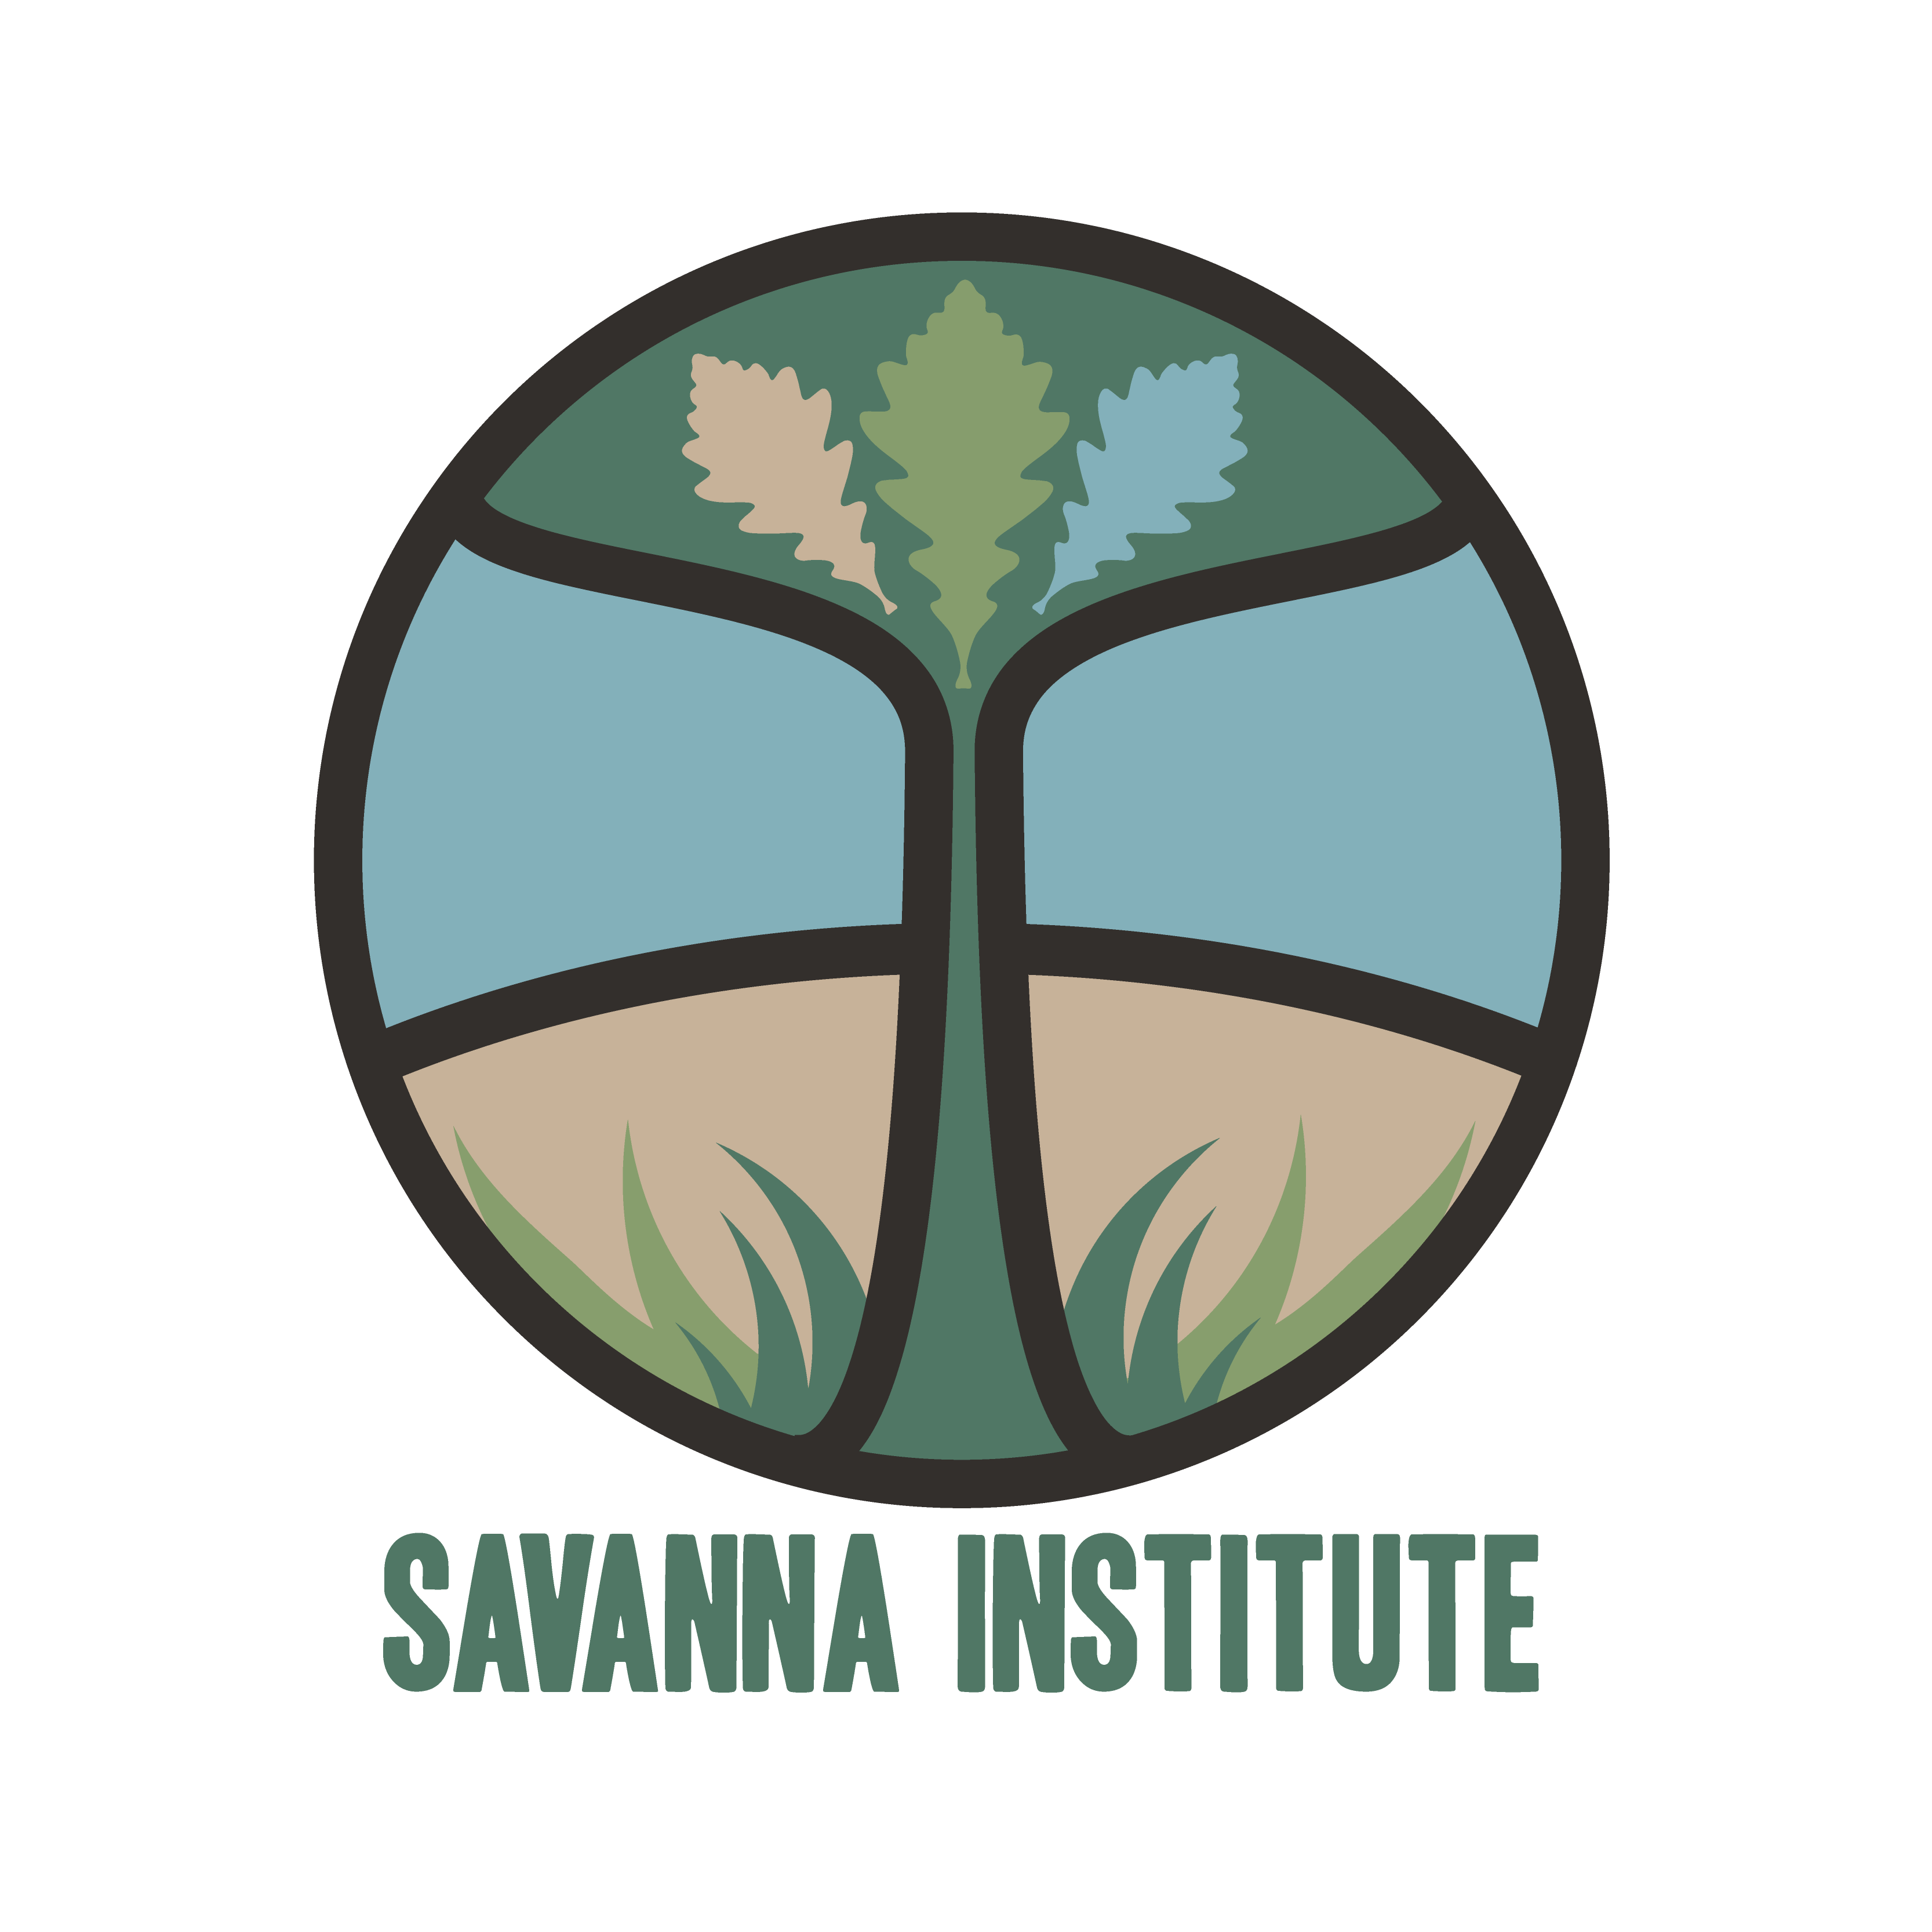 Savanna Institute Seeks an Ecosystem Services Scientist